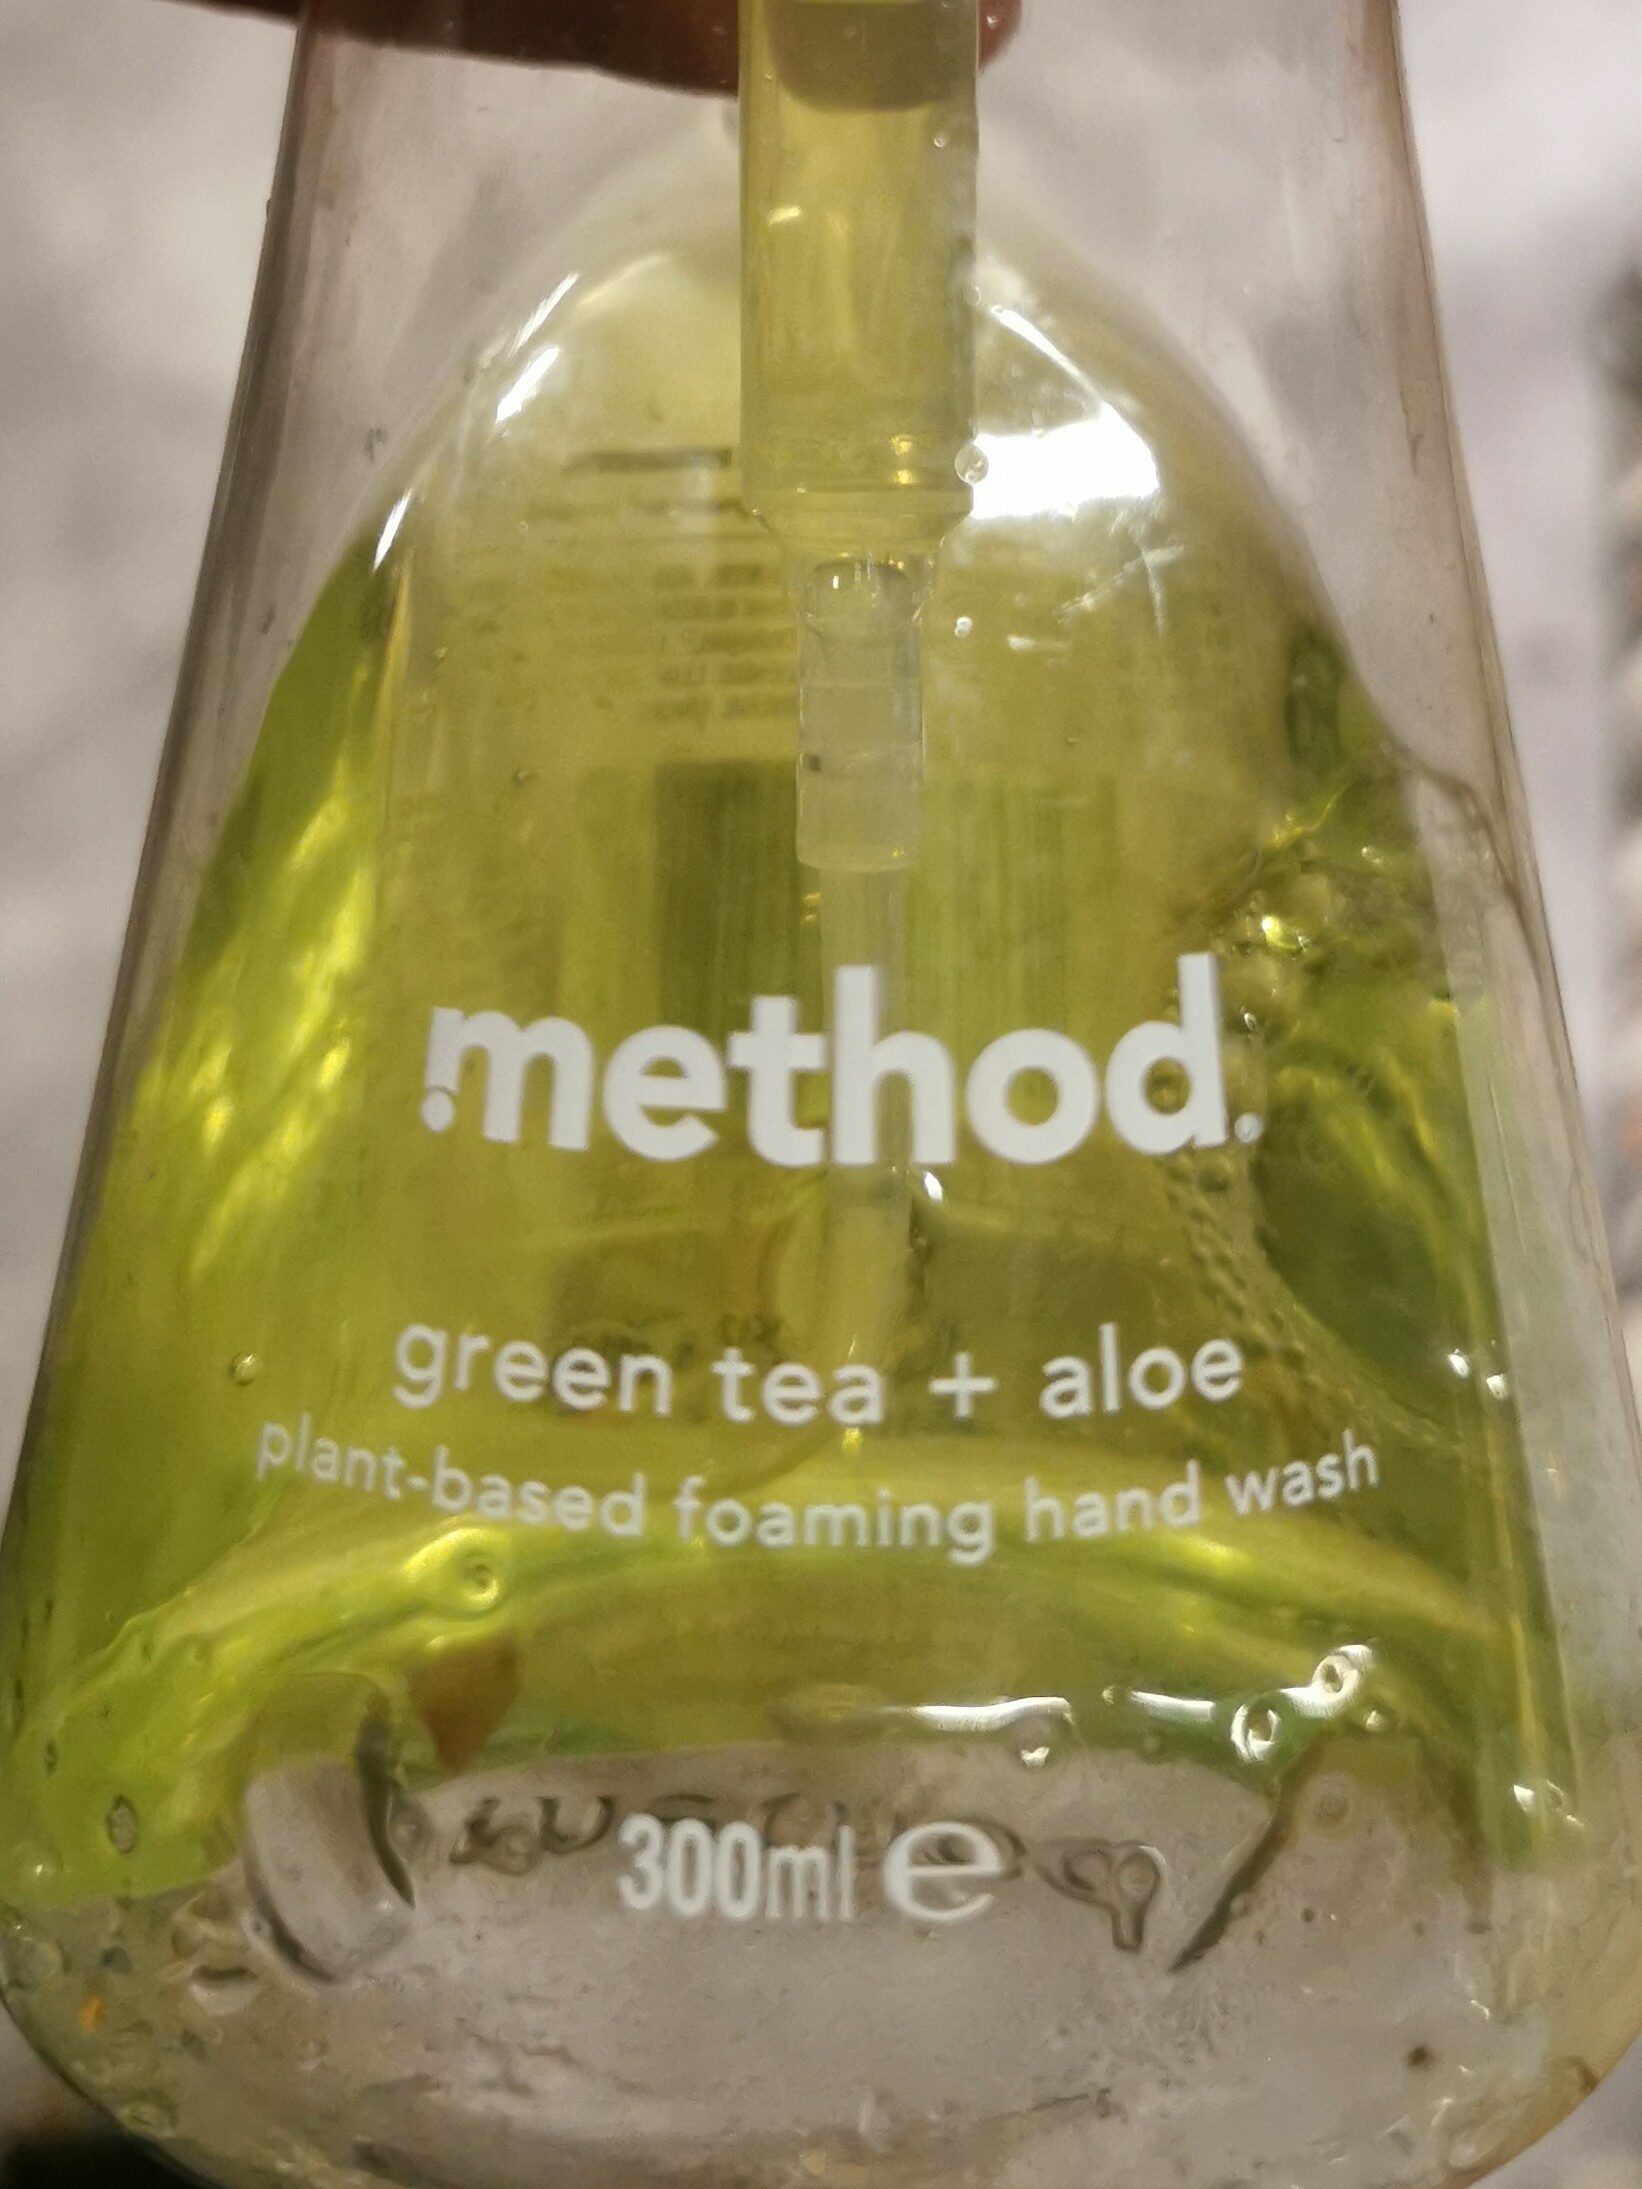 Method Green tea and Aloe hand soap - Product - en